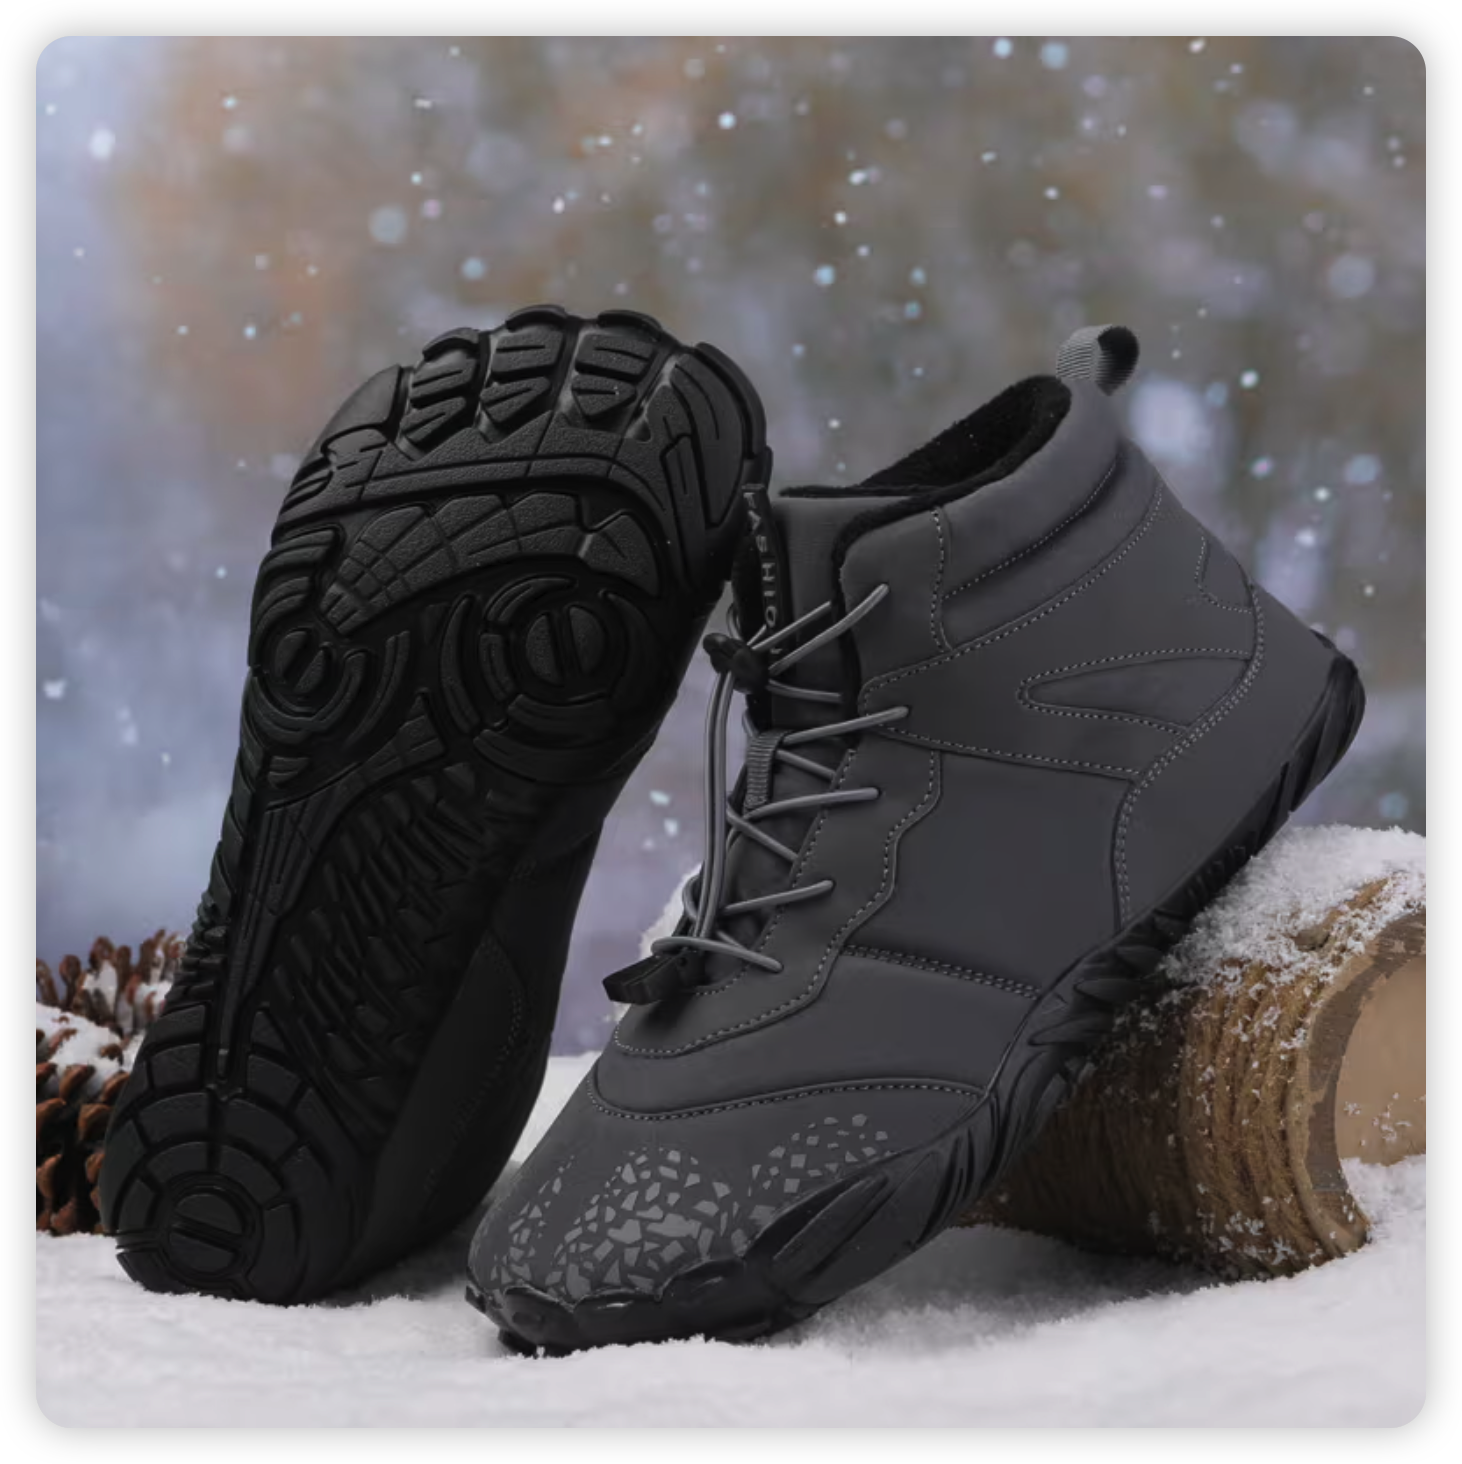 Arctic Contact 3.0™ Barefoot shoes – Naturcontact